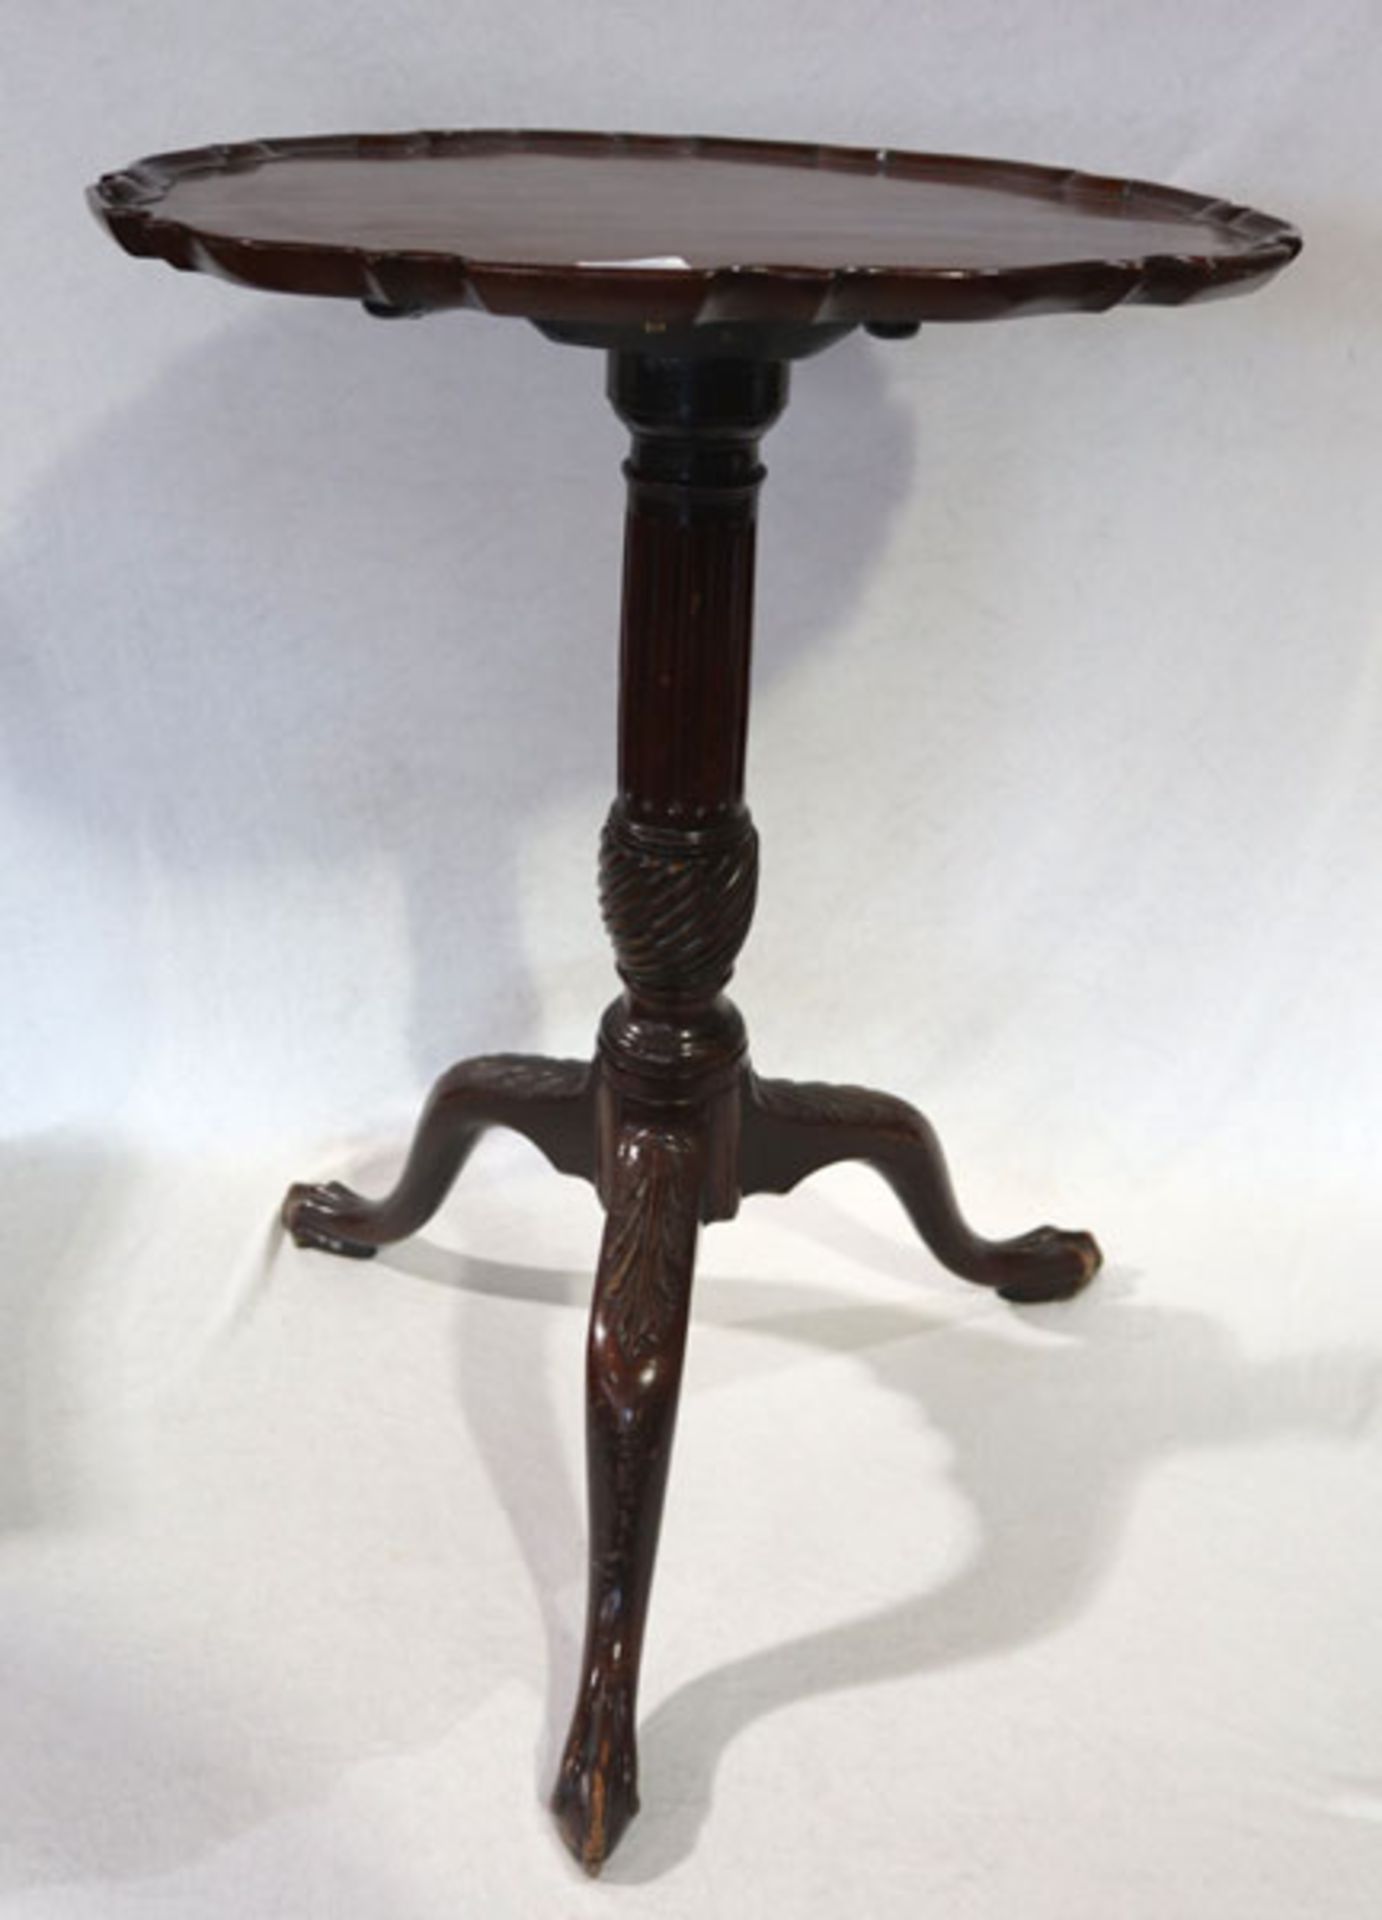 Runder Beistelltisch mit Mittelfuß auf 3 Beinen, beschnitzt, H 73 cm, D 53 cm, Gebrauchsspuren